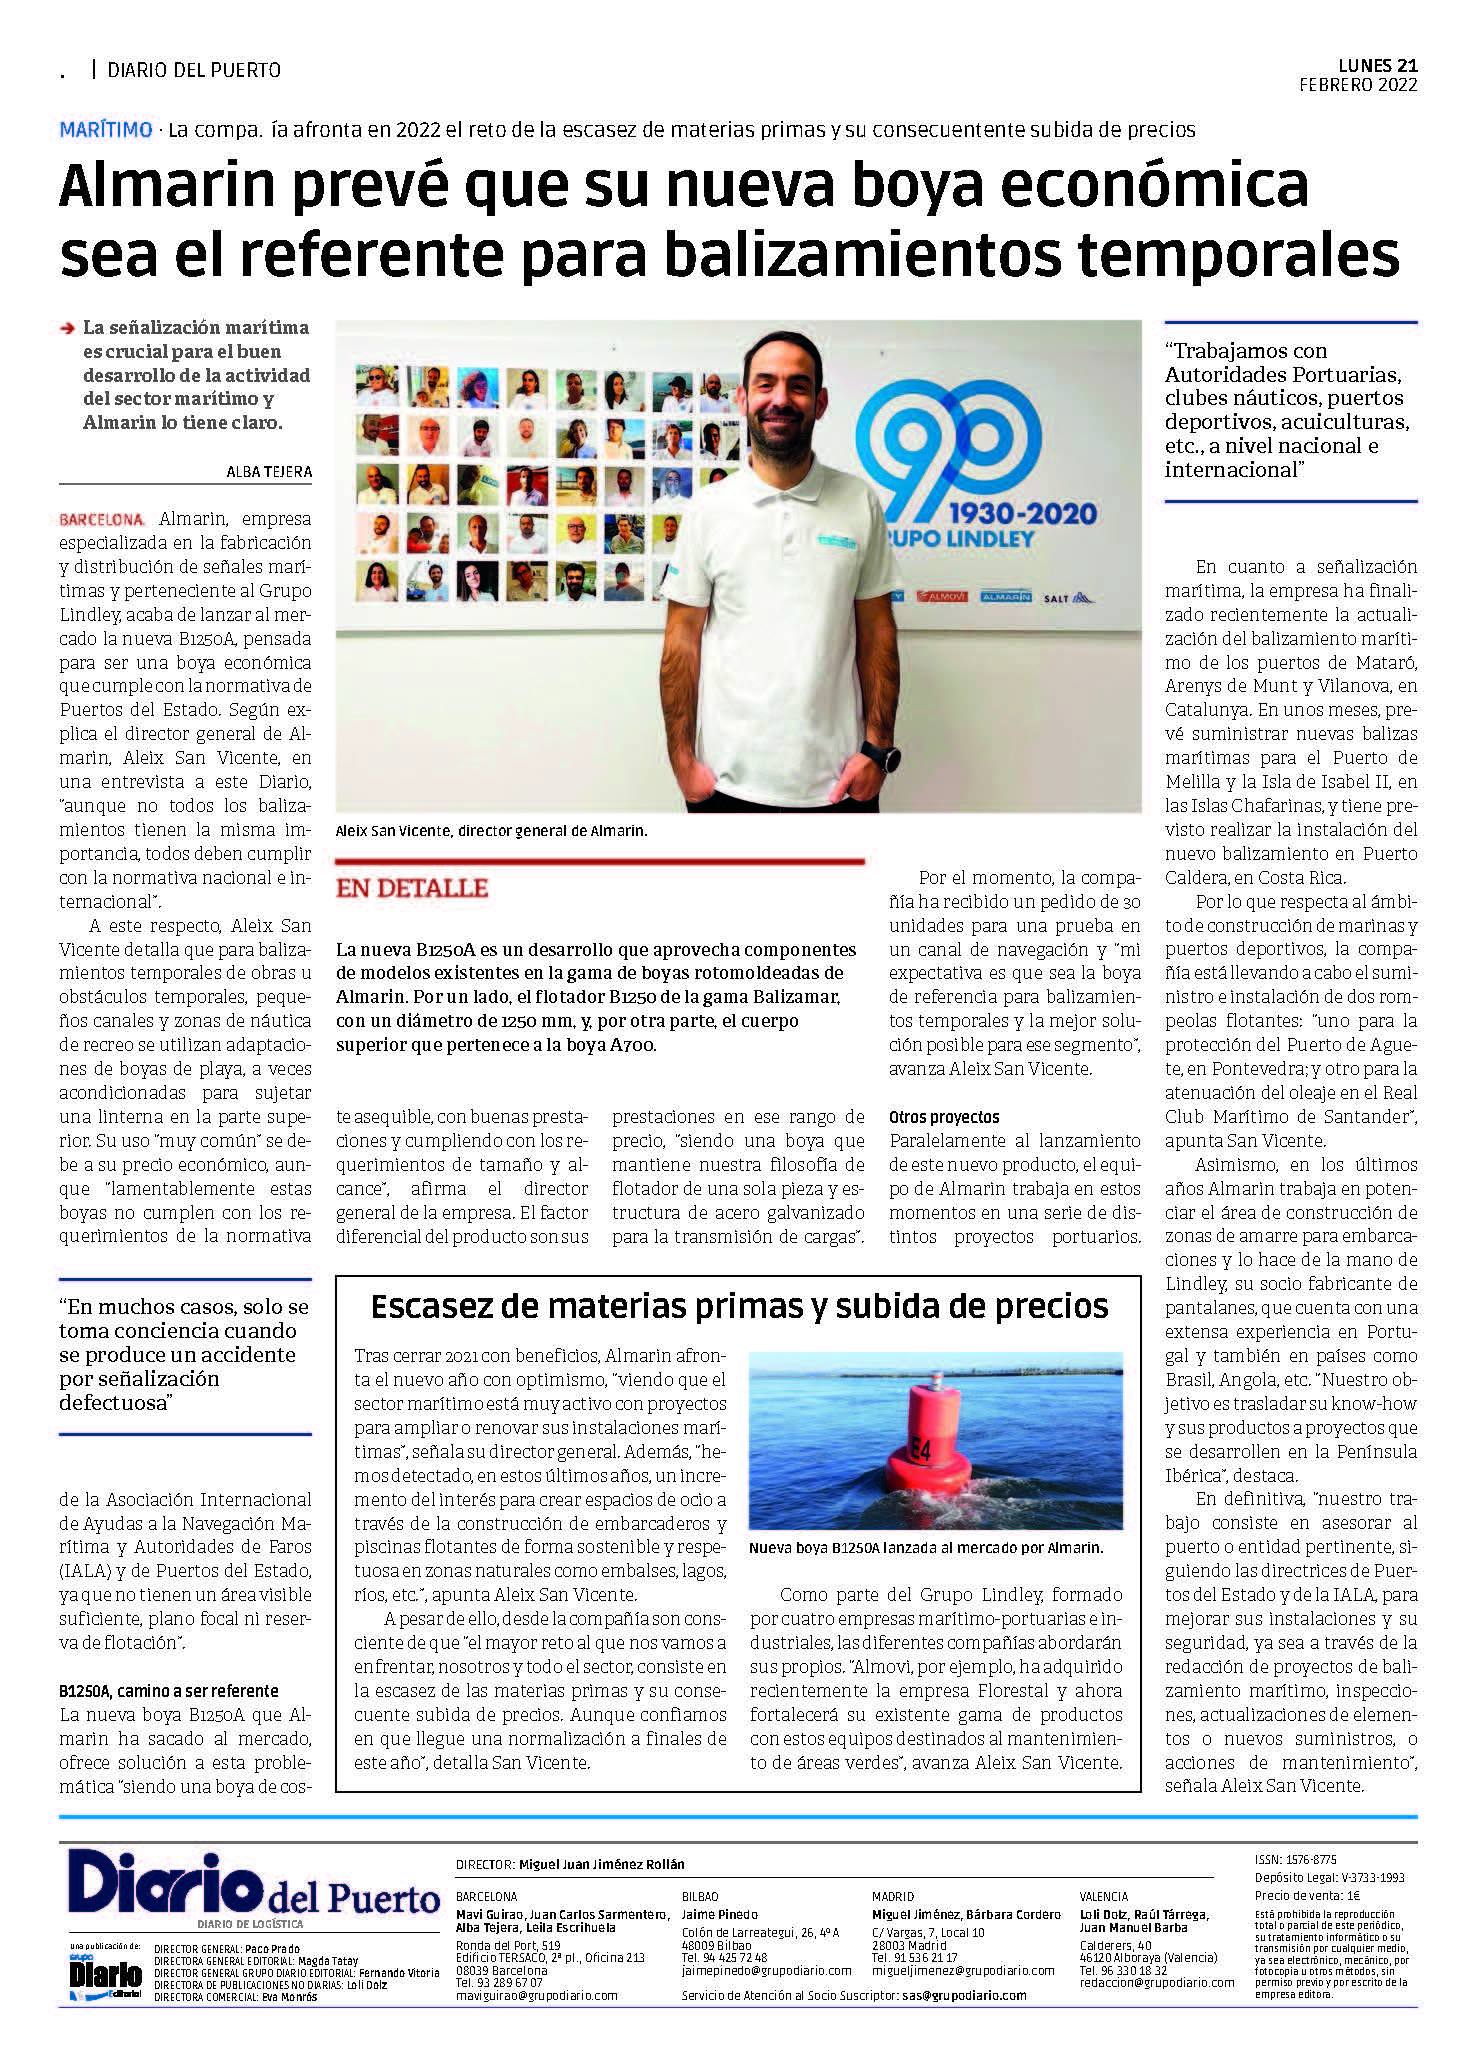 Entrevista al director general, Aleix San Vicente, en el Diario del Puerto